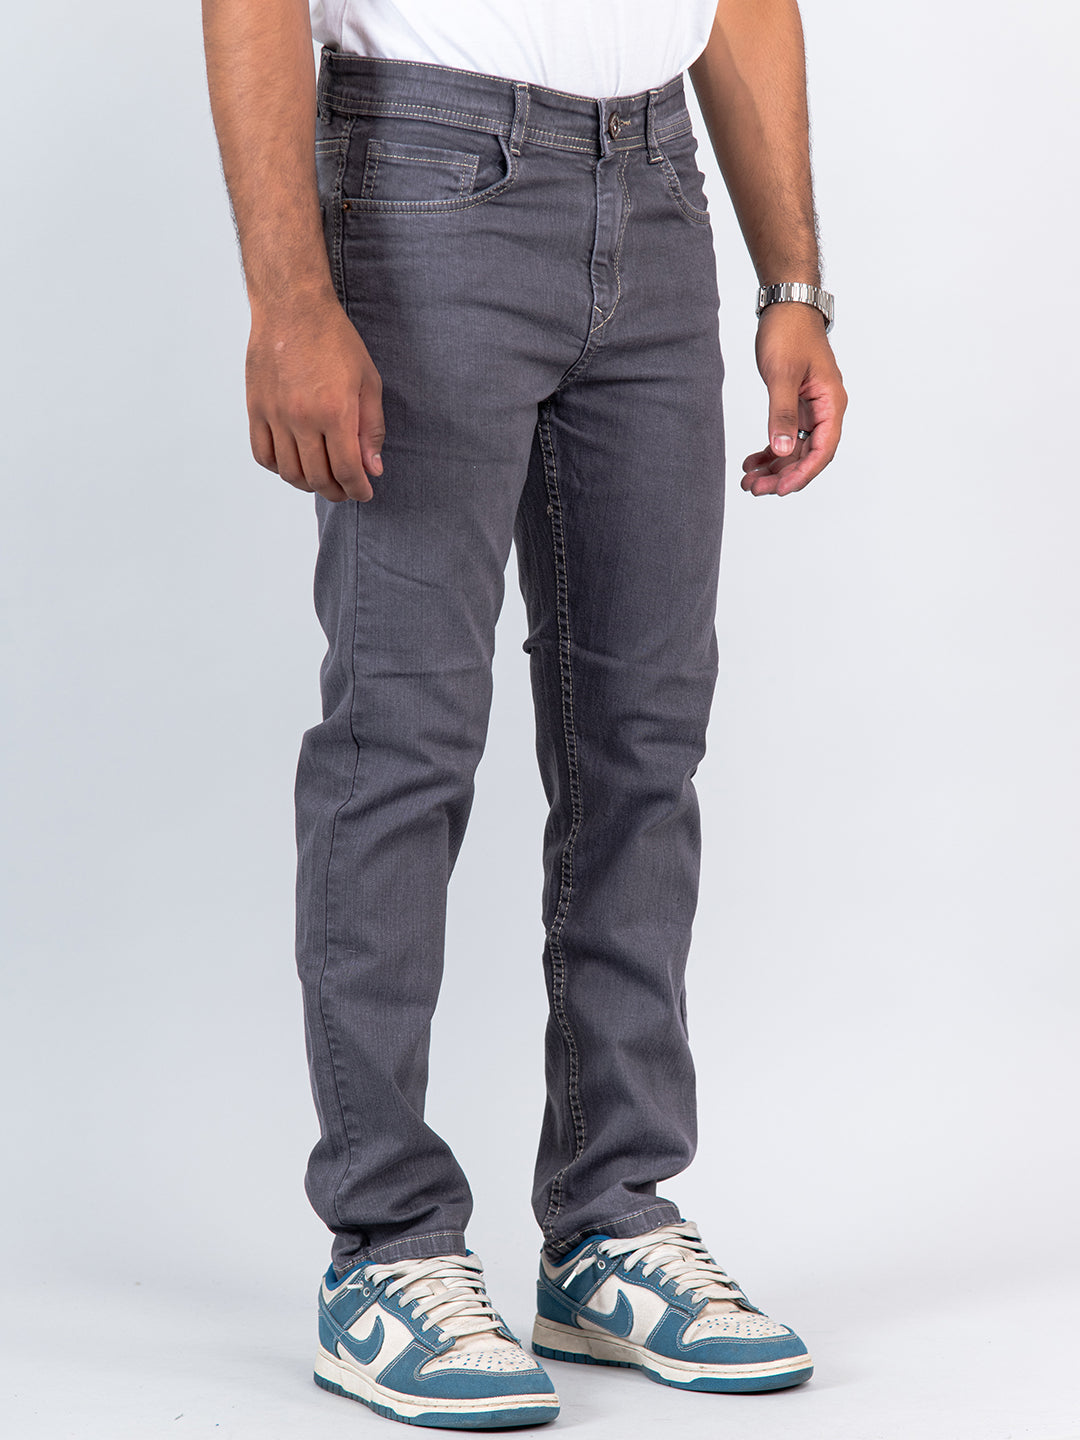 grey denim jeans mens